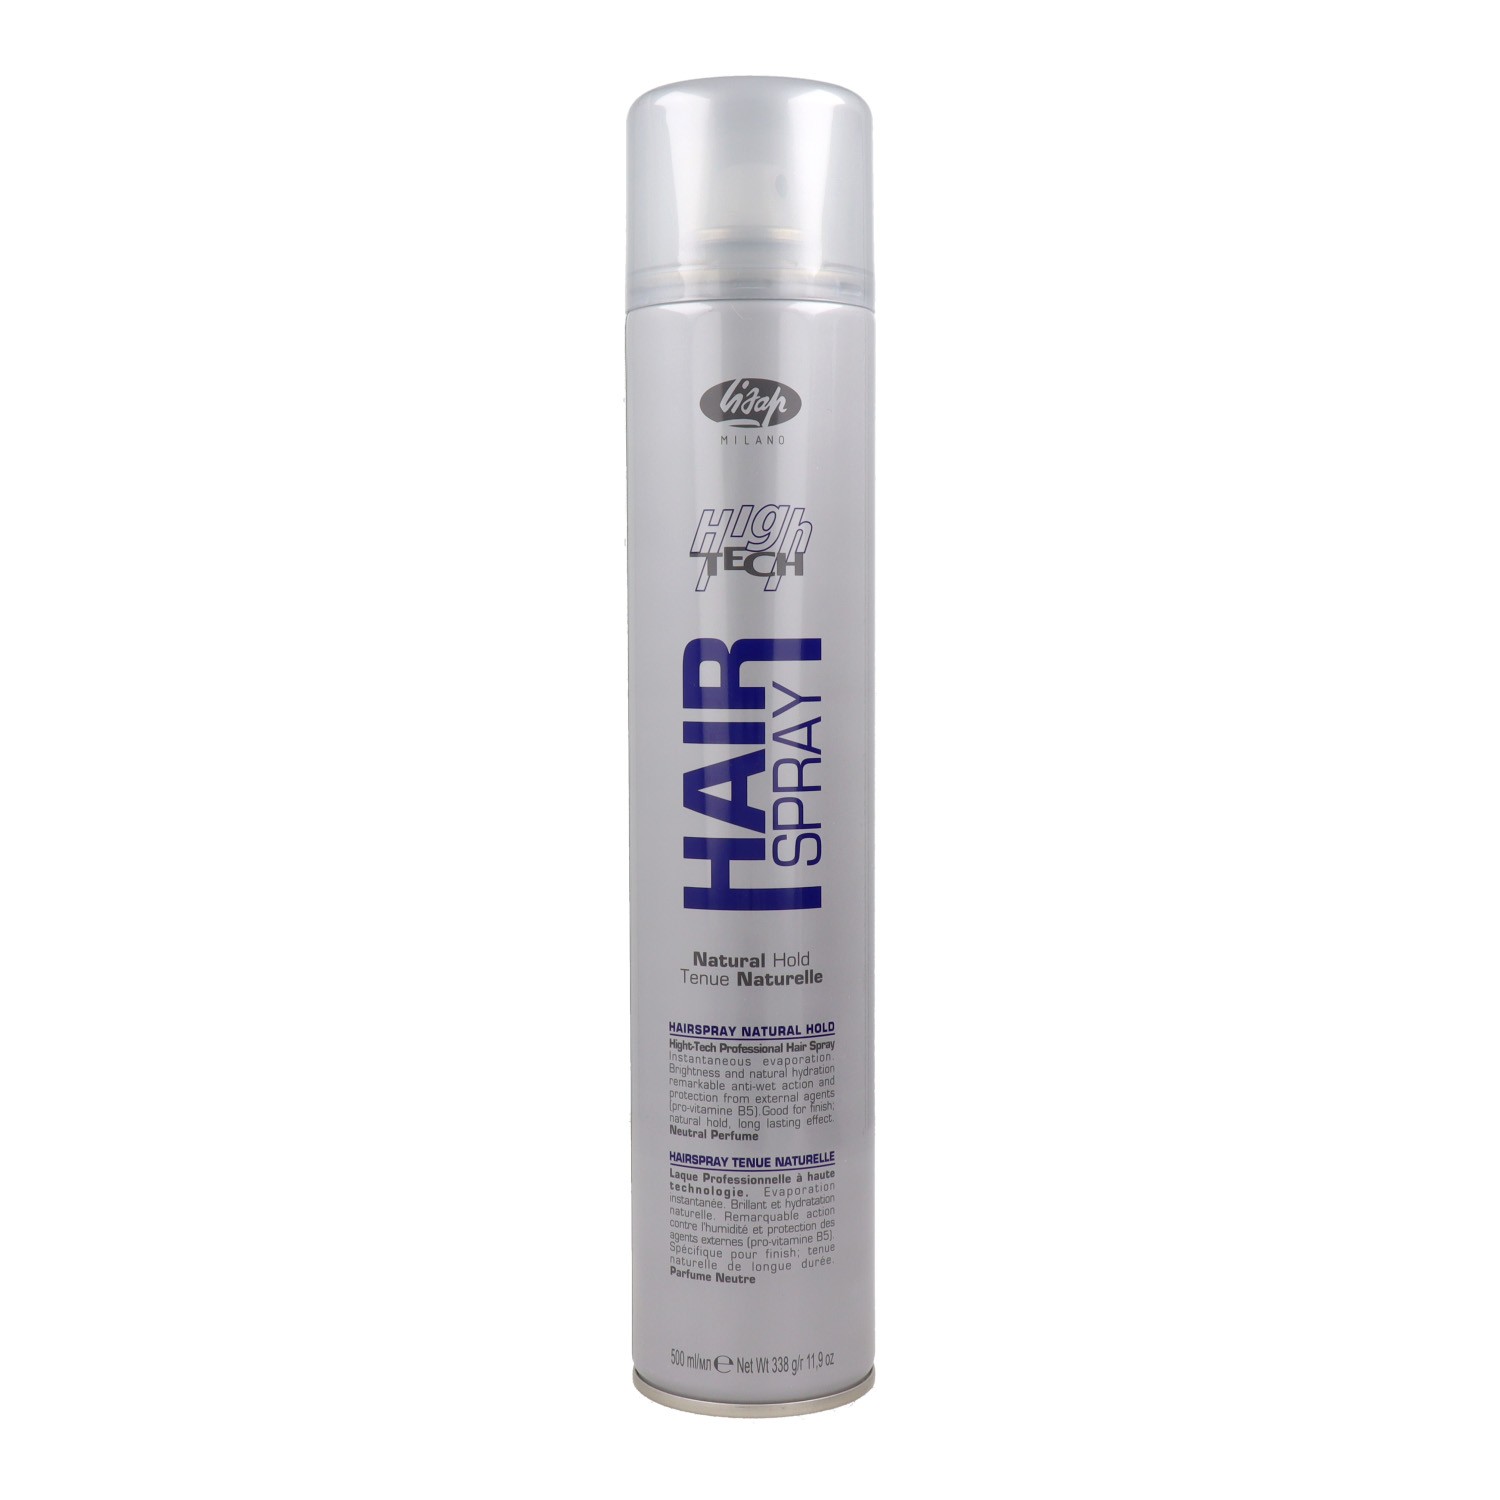 Lisap High Tech Hair Hair Natural Hold Spray Lacquer 500 ml